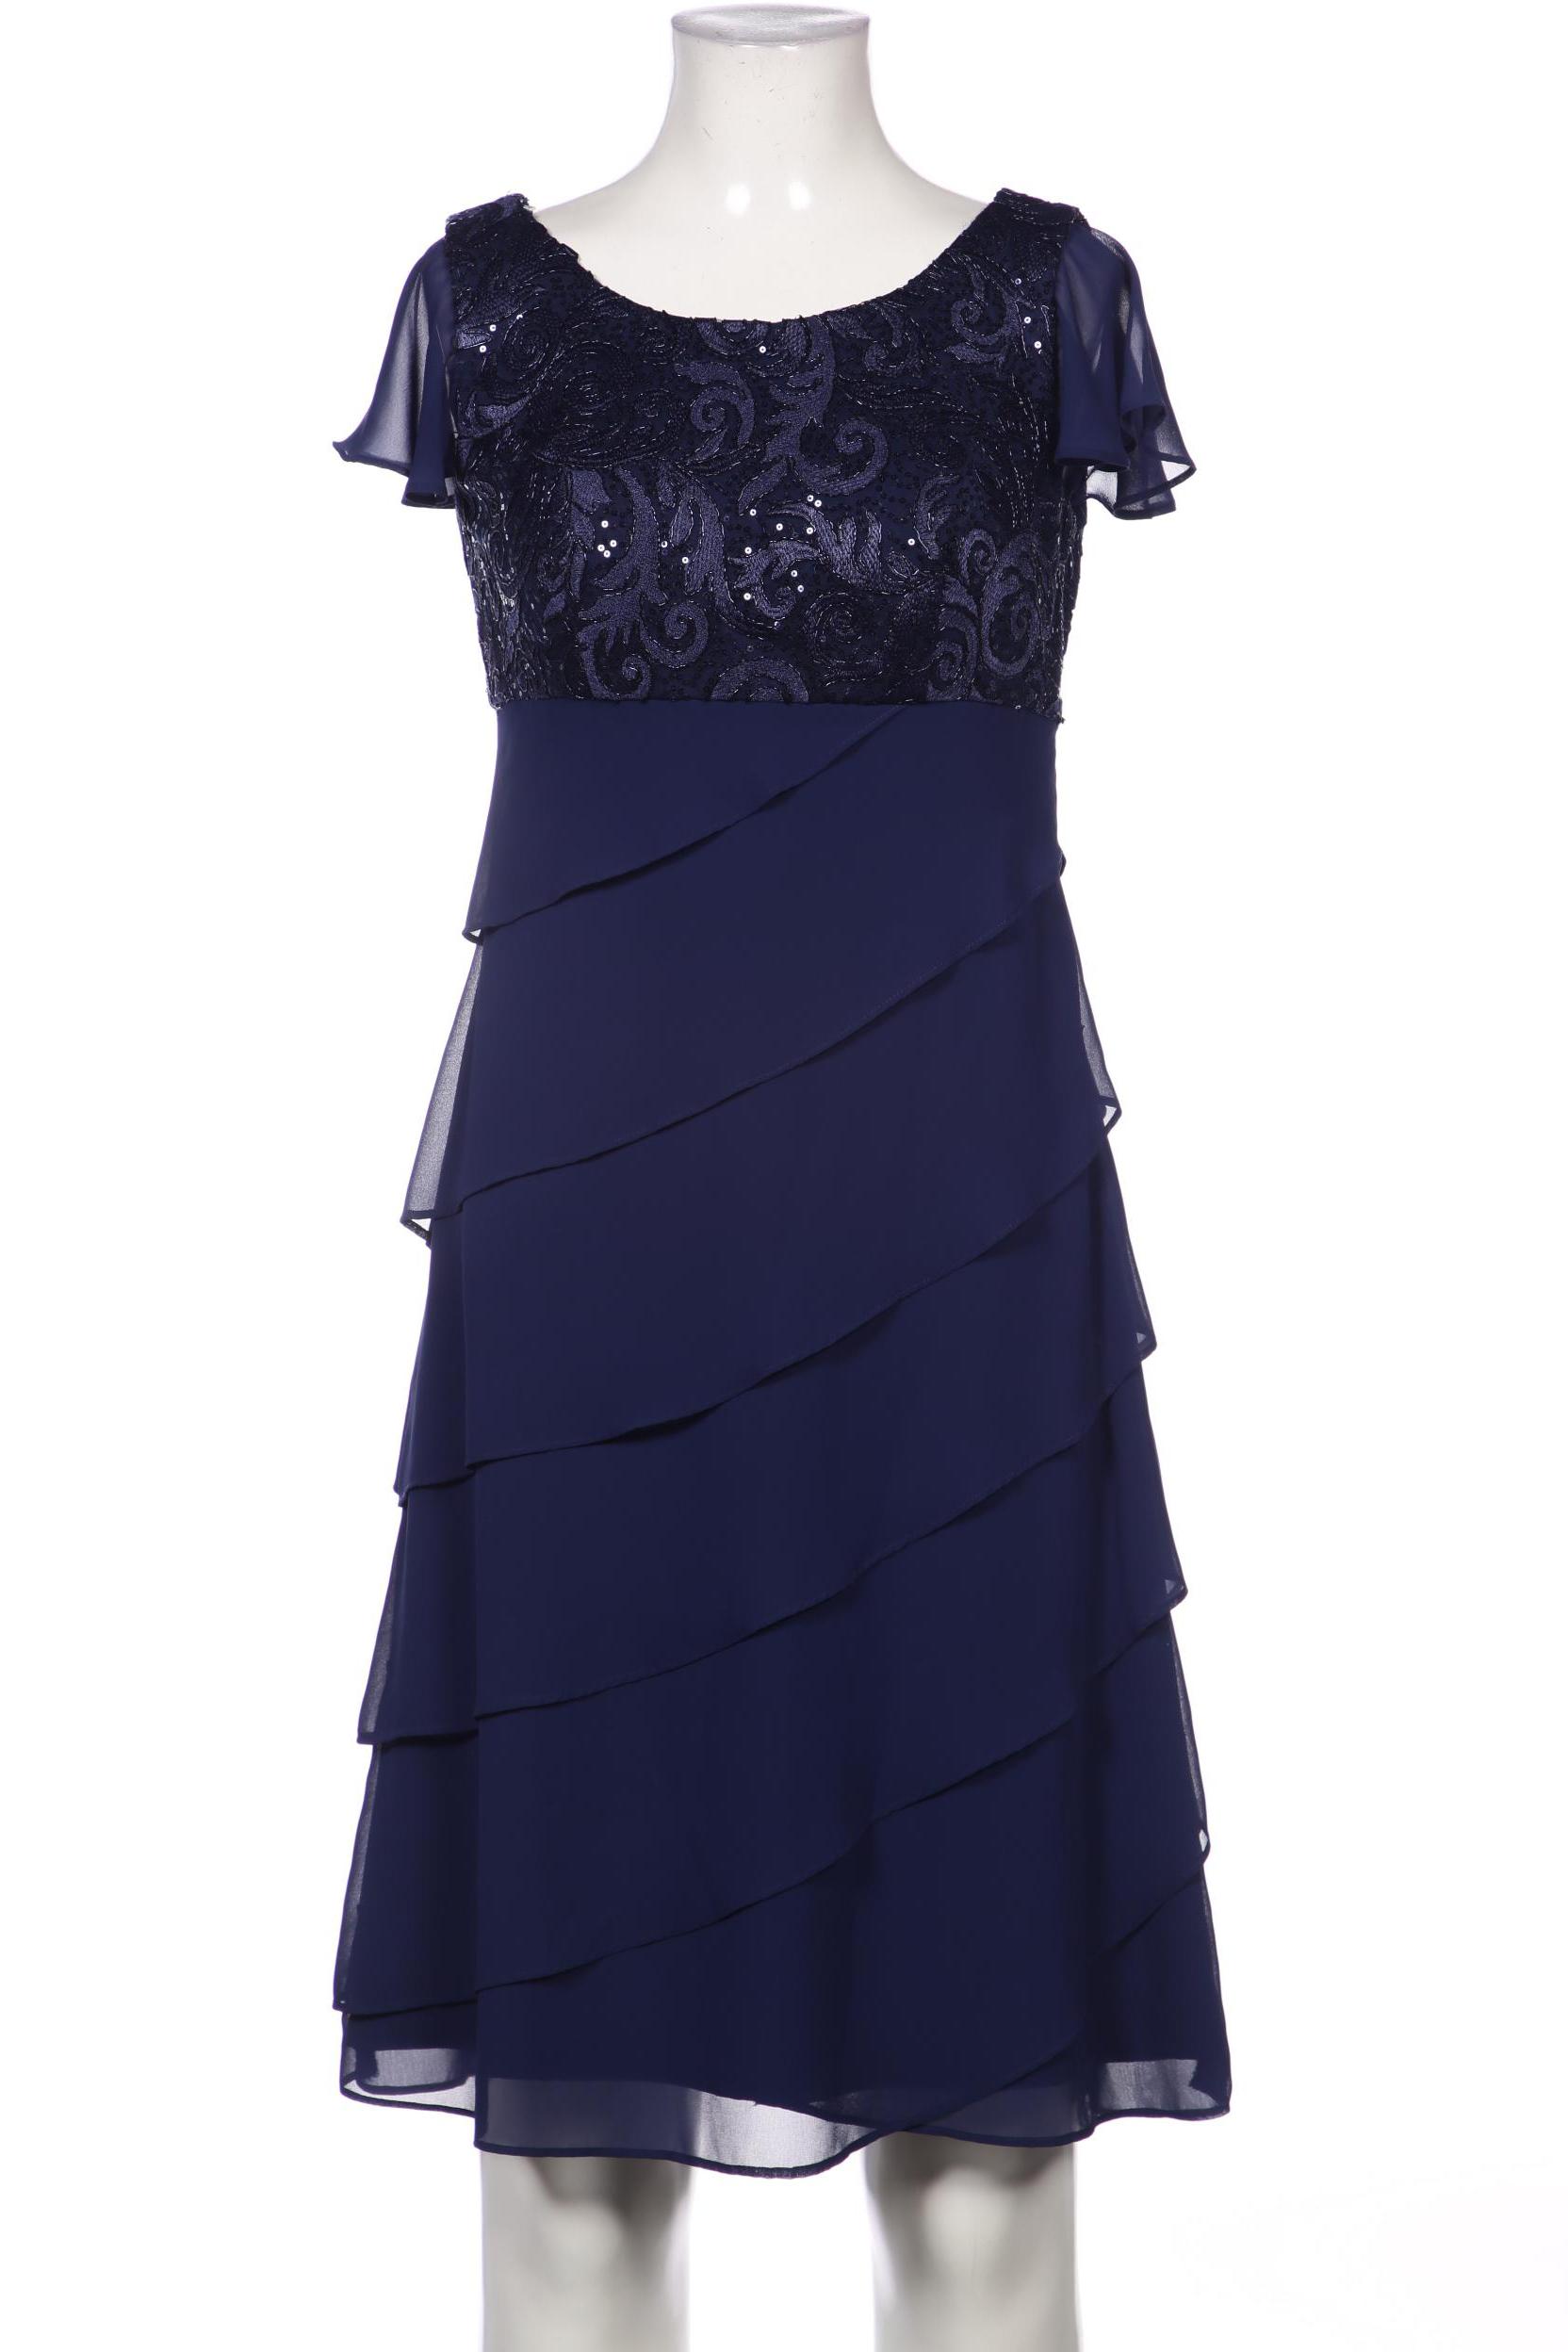 Mariposa Damen Kleid, marineblau, Gr. 36 von Mariposa